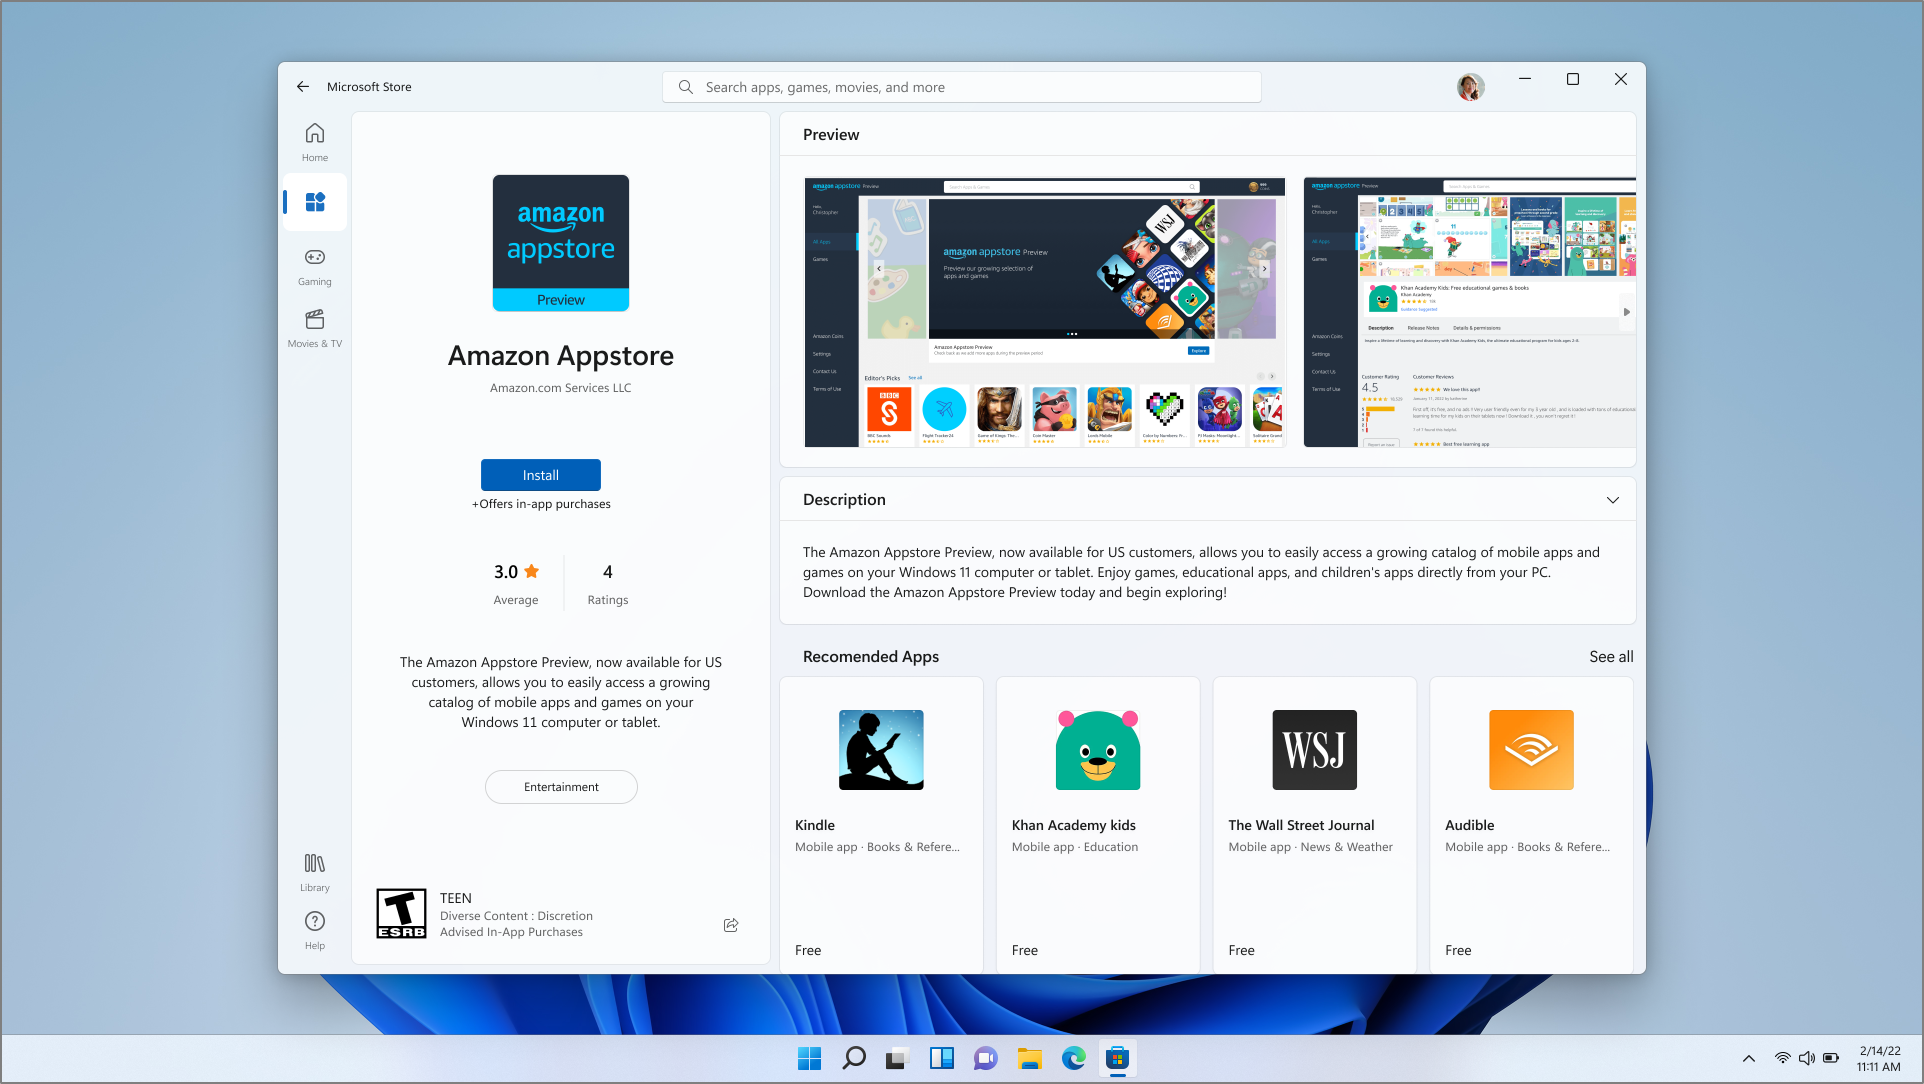 Captura de pantalla de la página de descarga de Amazon Appstore en la aplicación Microsoft Store.